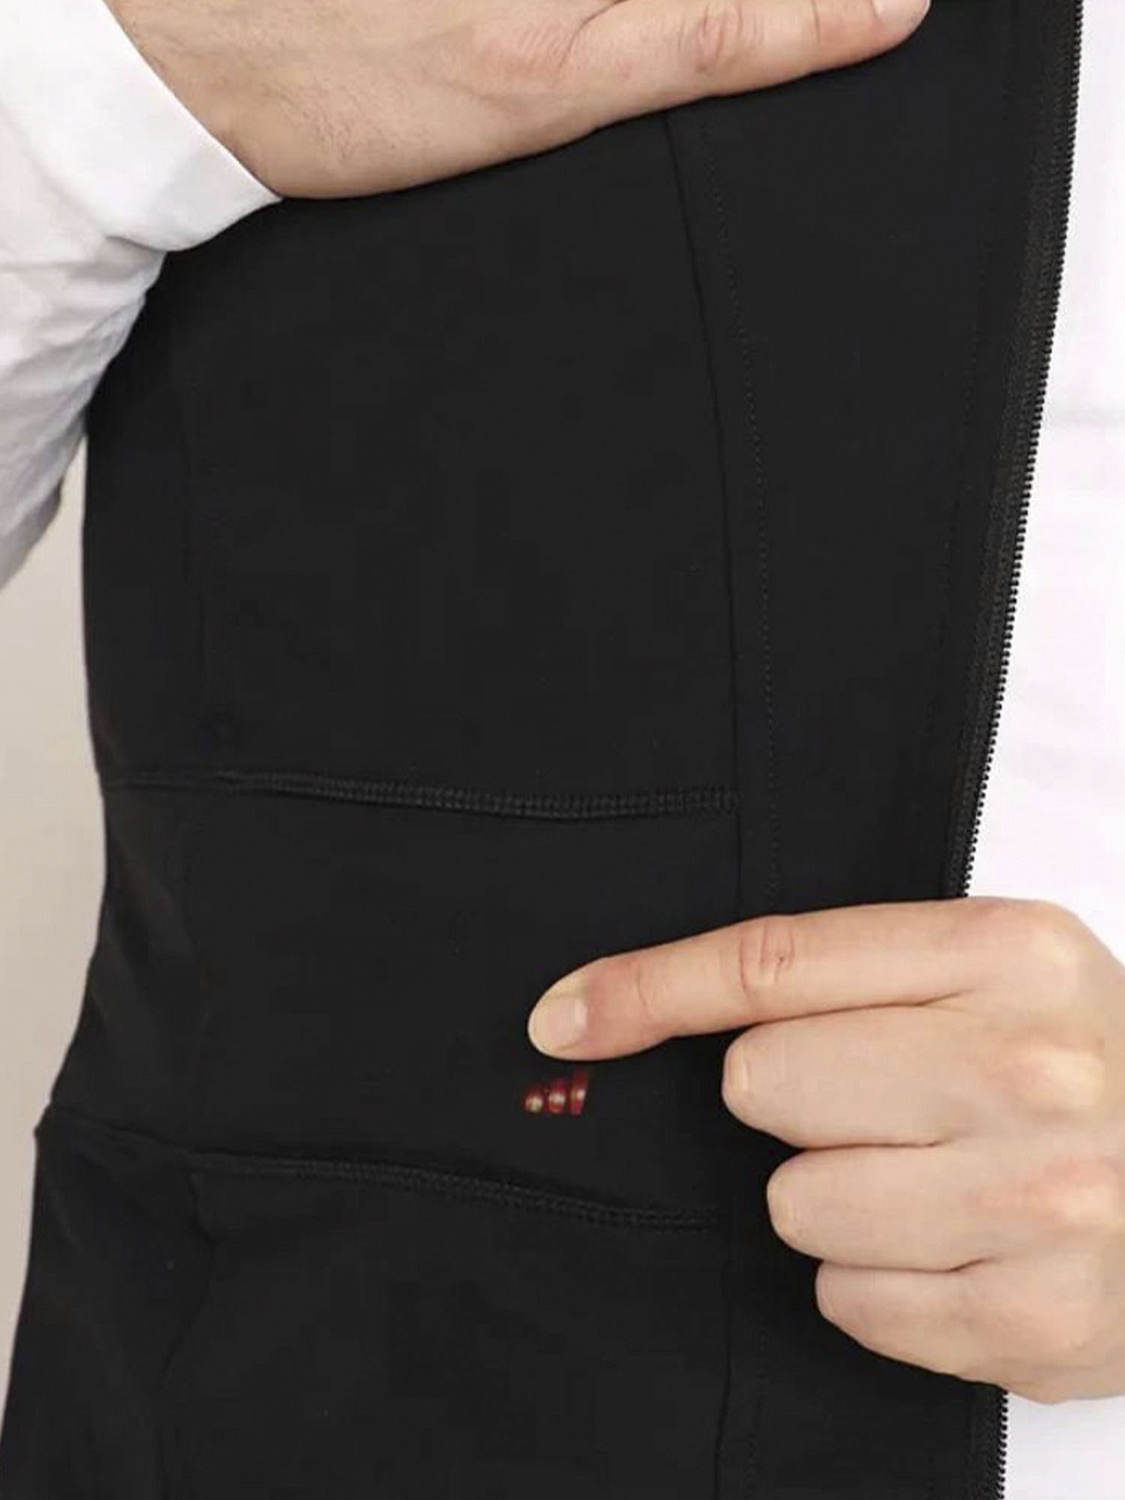 Жилет с обогревательным элементом без аккумулятора LENZ Heat Vest 1.0 Men Black